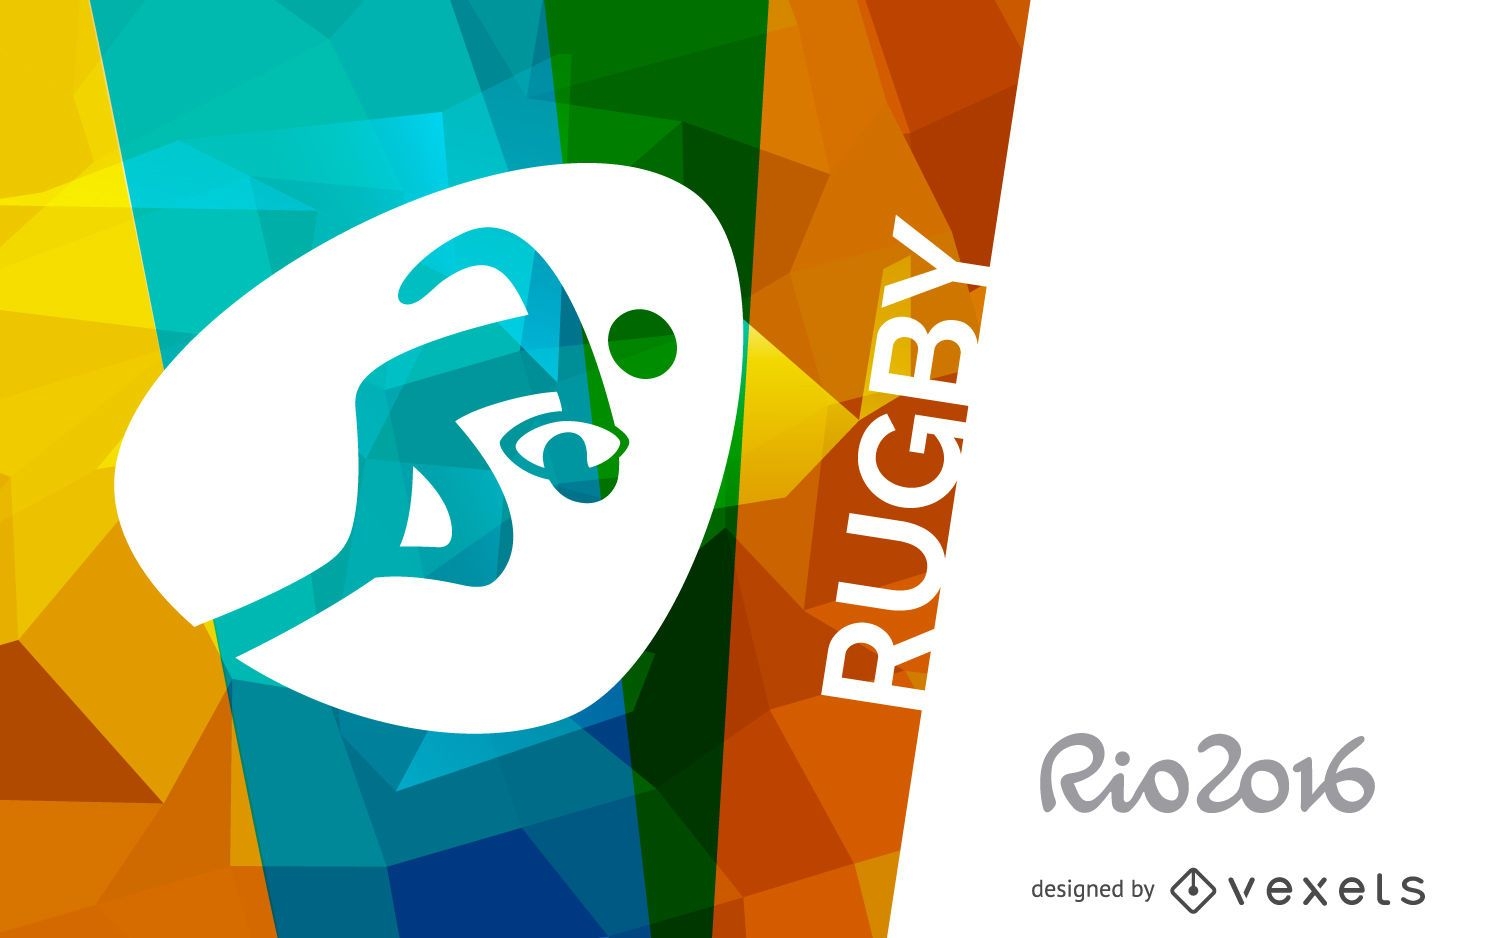 Banner de r?gbi Rio 2016